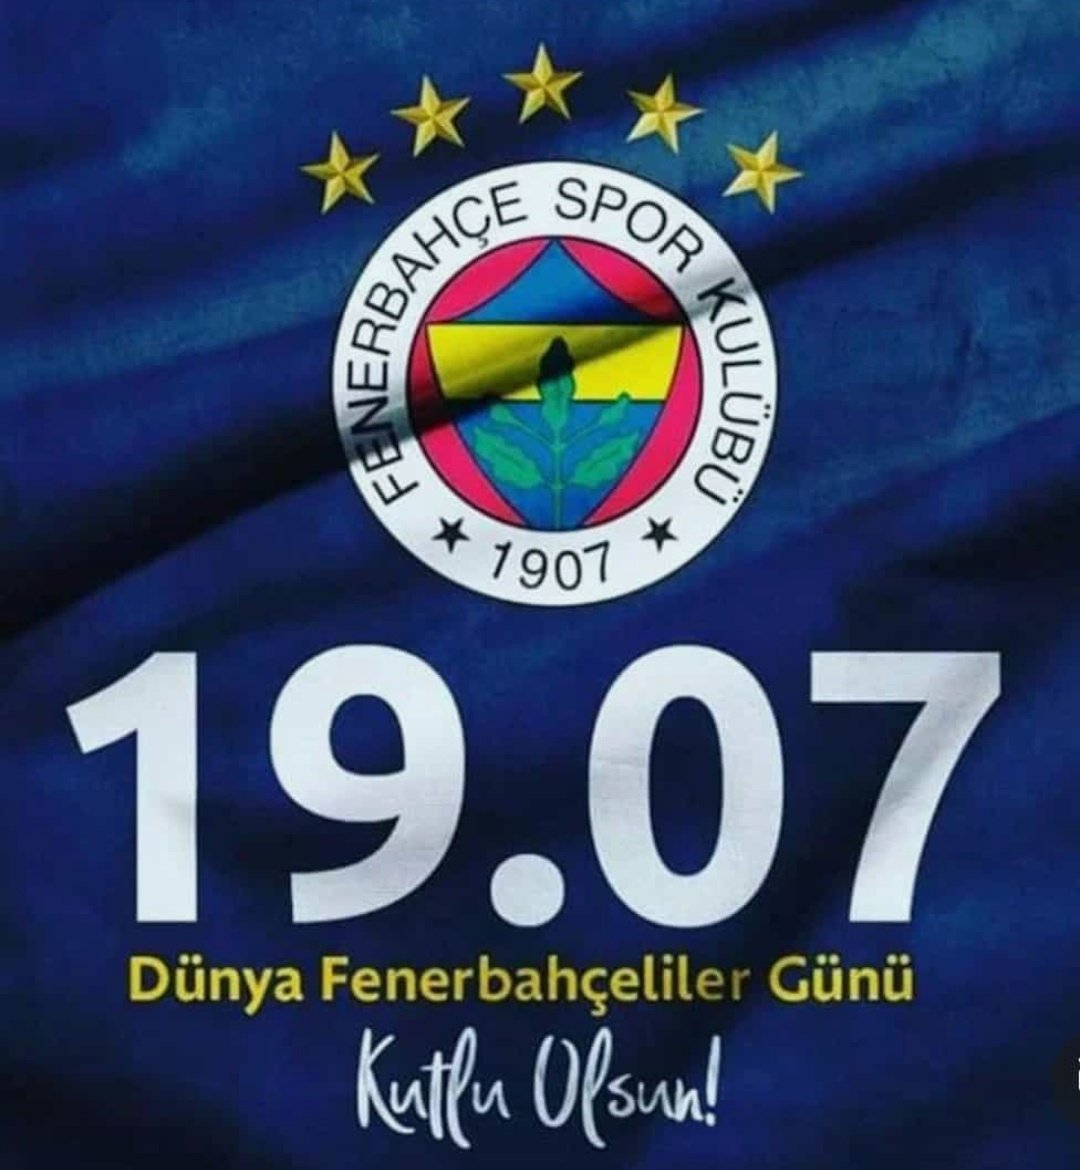 19.07💙💛
Dünyan Fenerbahçeliler Günü kutlu olsun 💙💛
 Fenerbahçe ailesi 💛💙
#Omuzomuzaşampiyonluğa